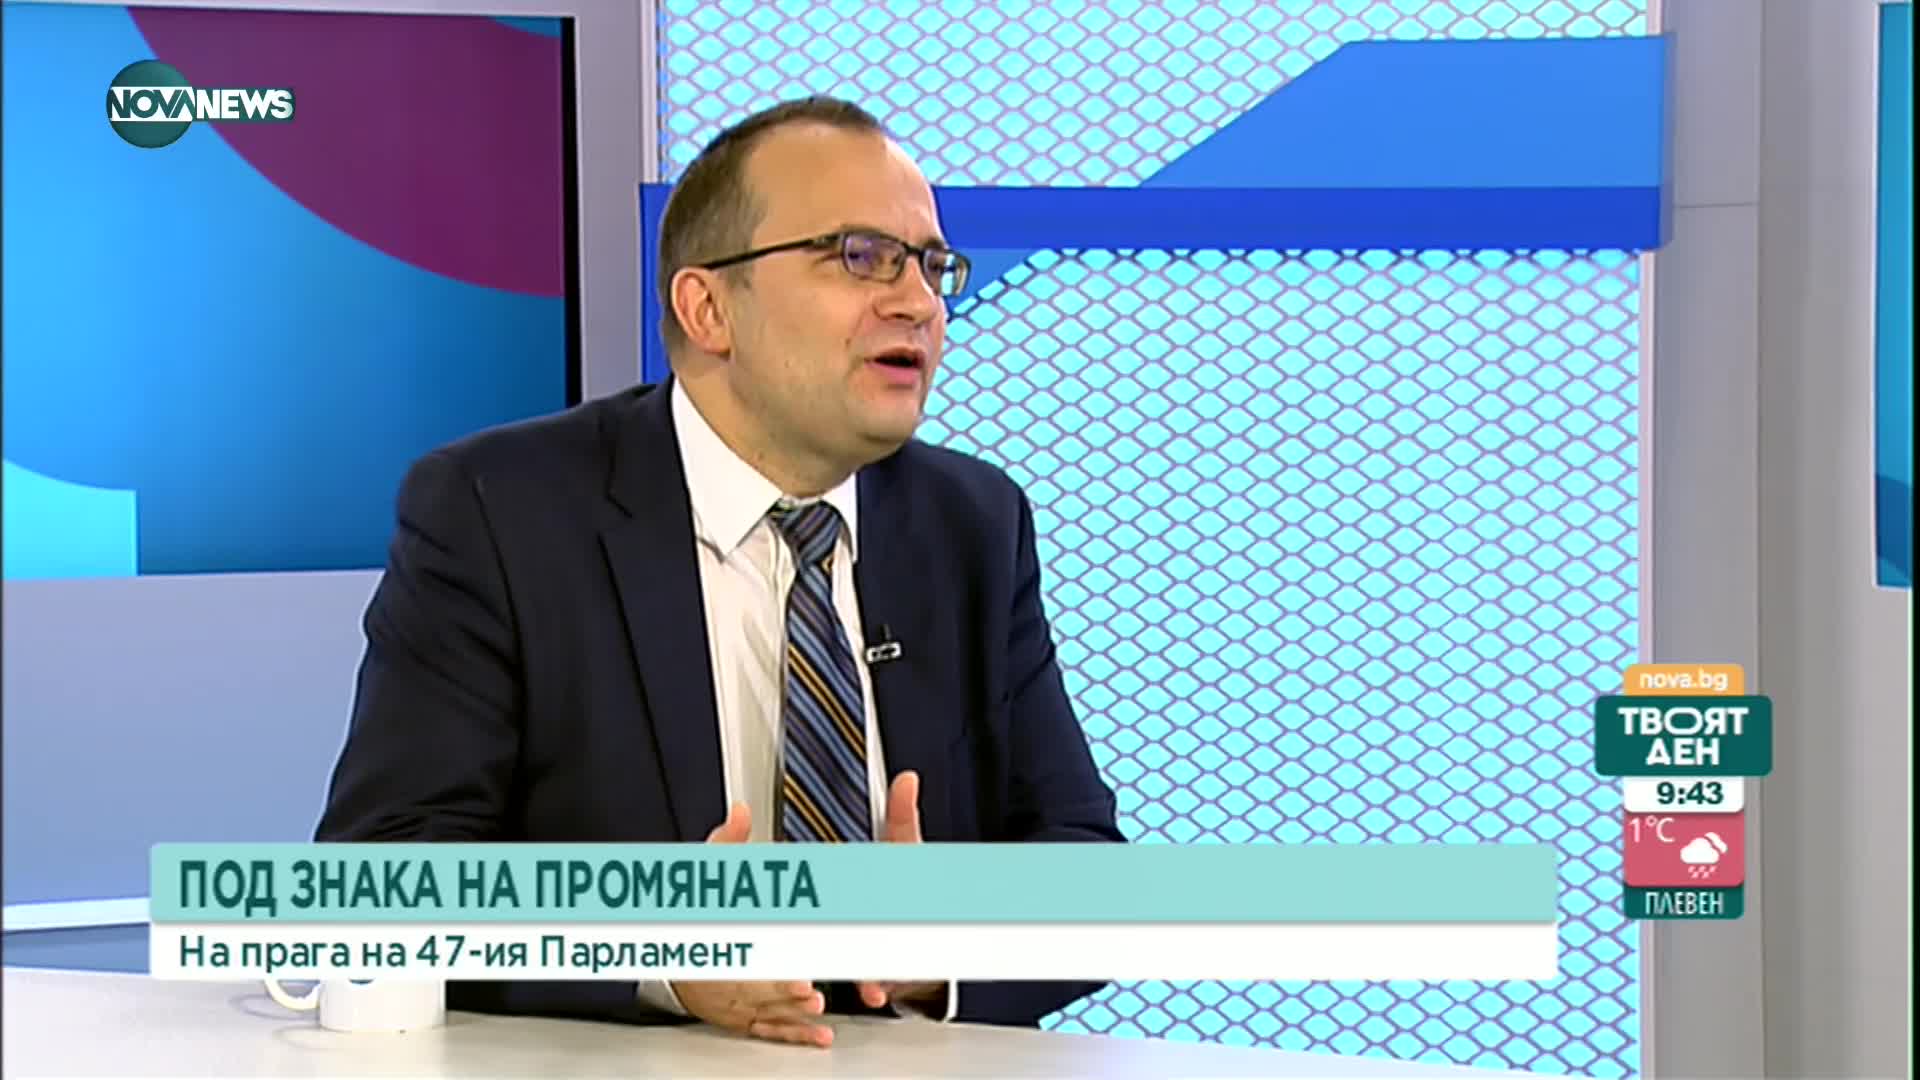 Мартин Димитров: Властта трябва да се върне в парламента